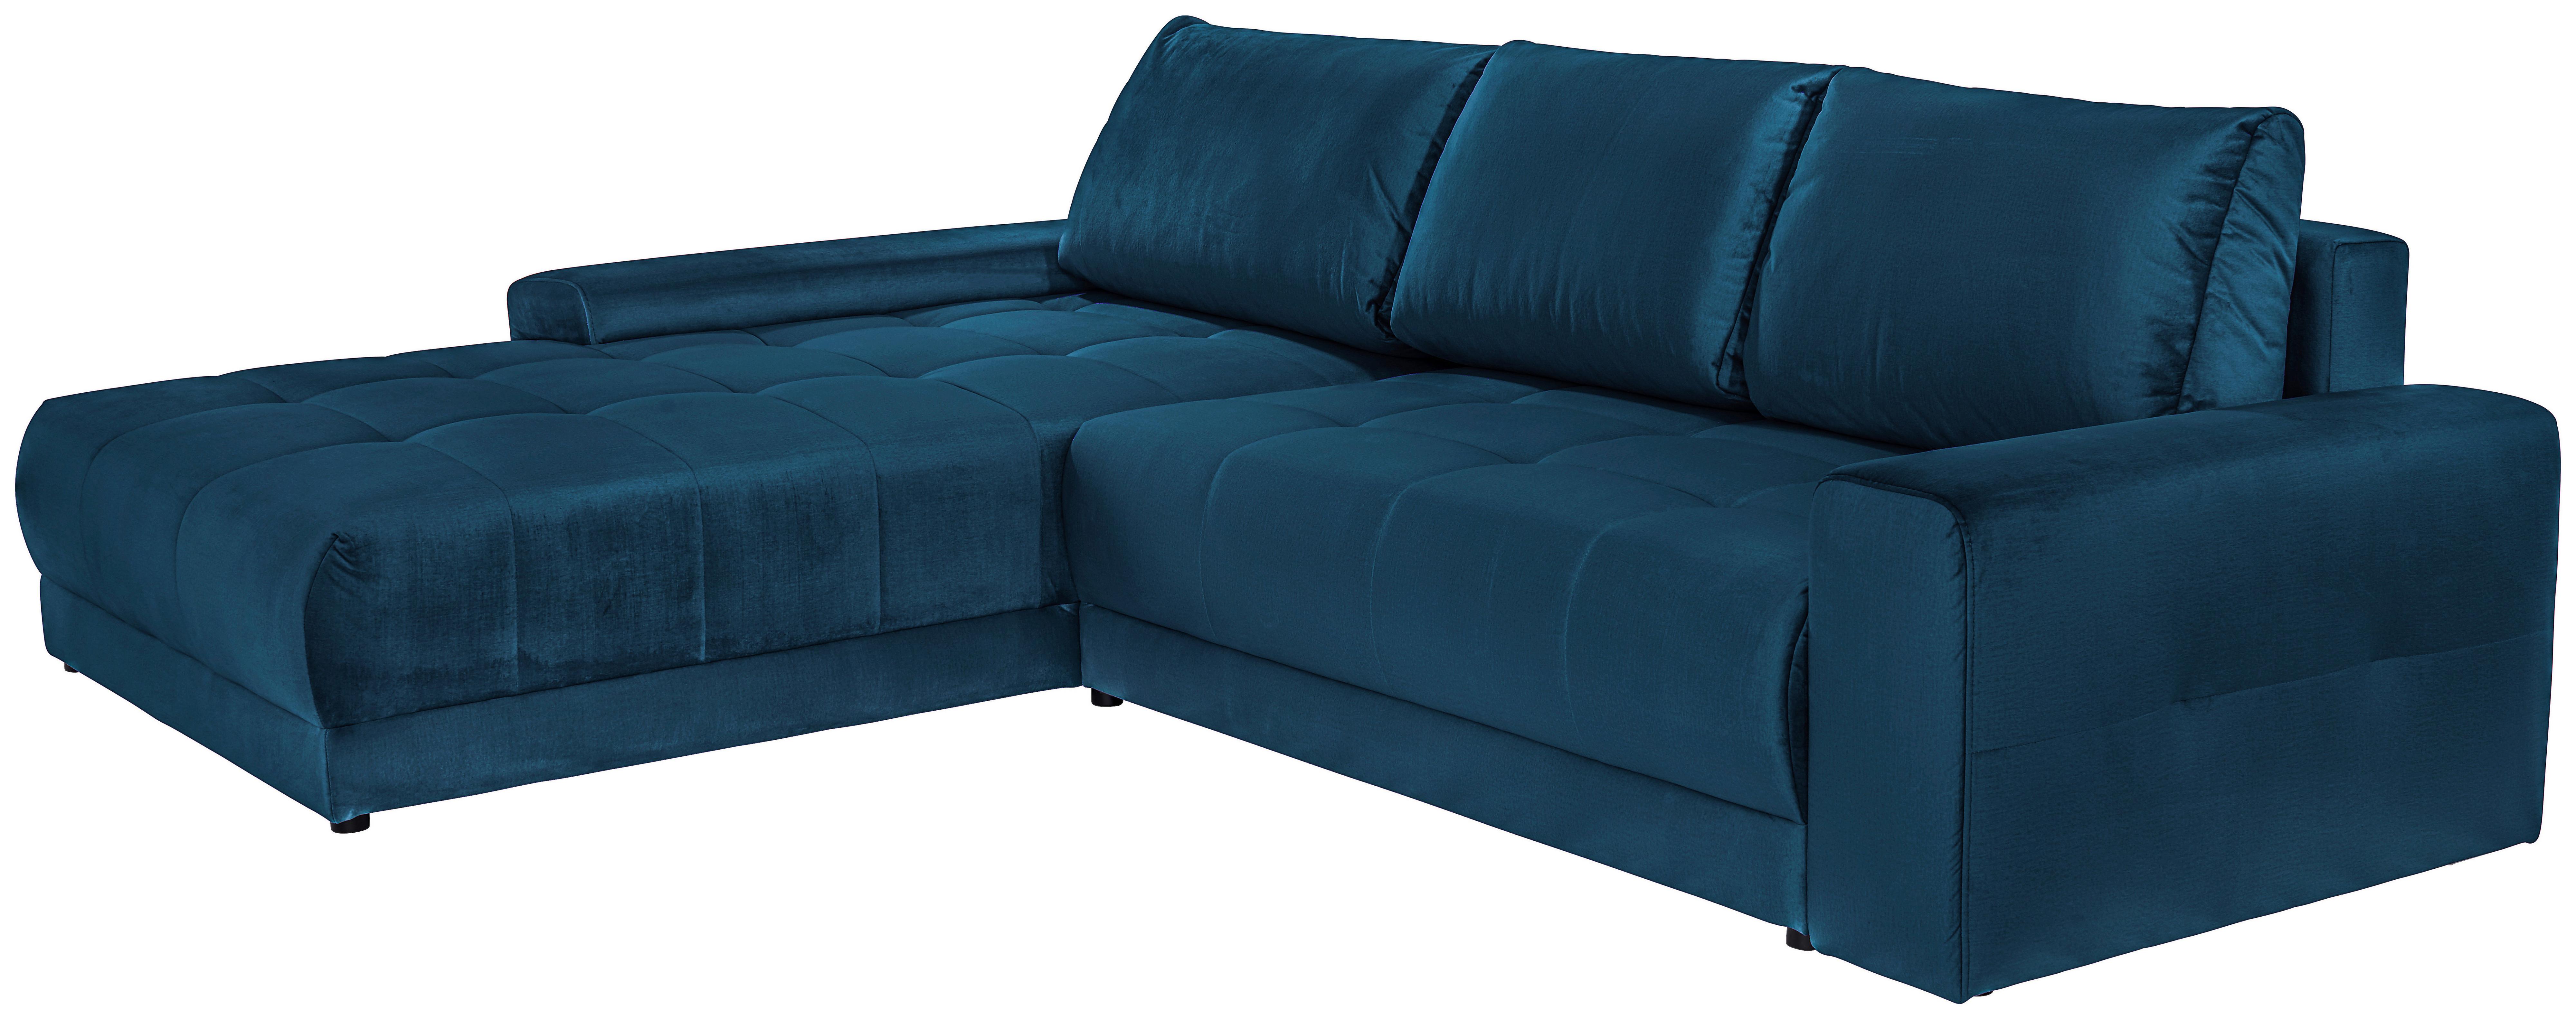 Sjedeća Garnitura Adria - tamno plava, Modern, tekstil (213/308cm) - Based